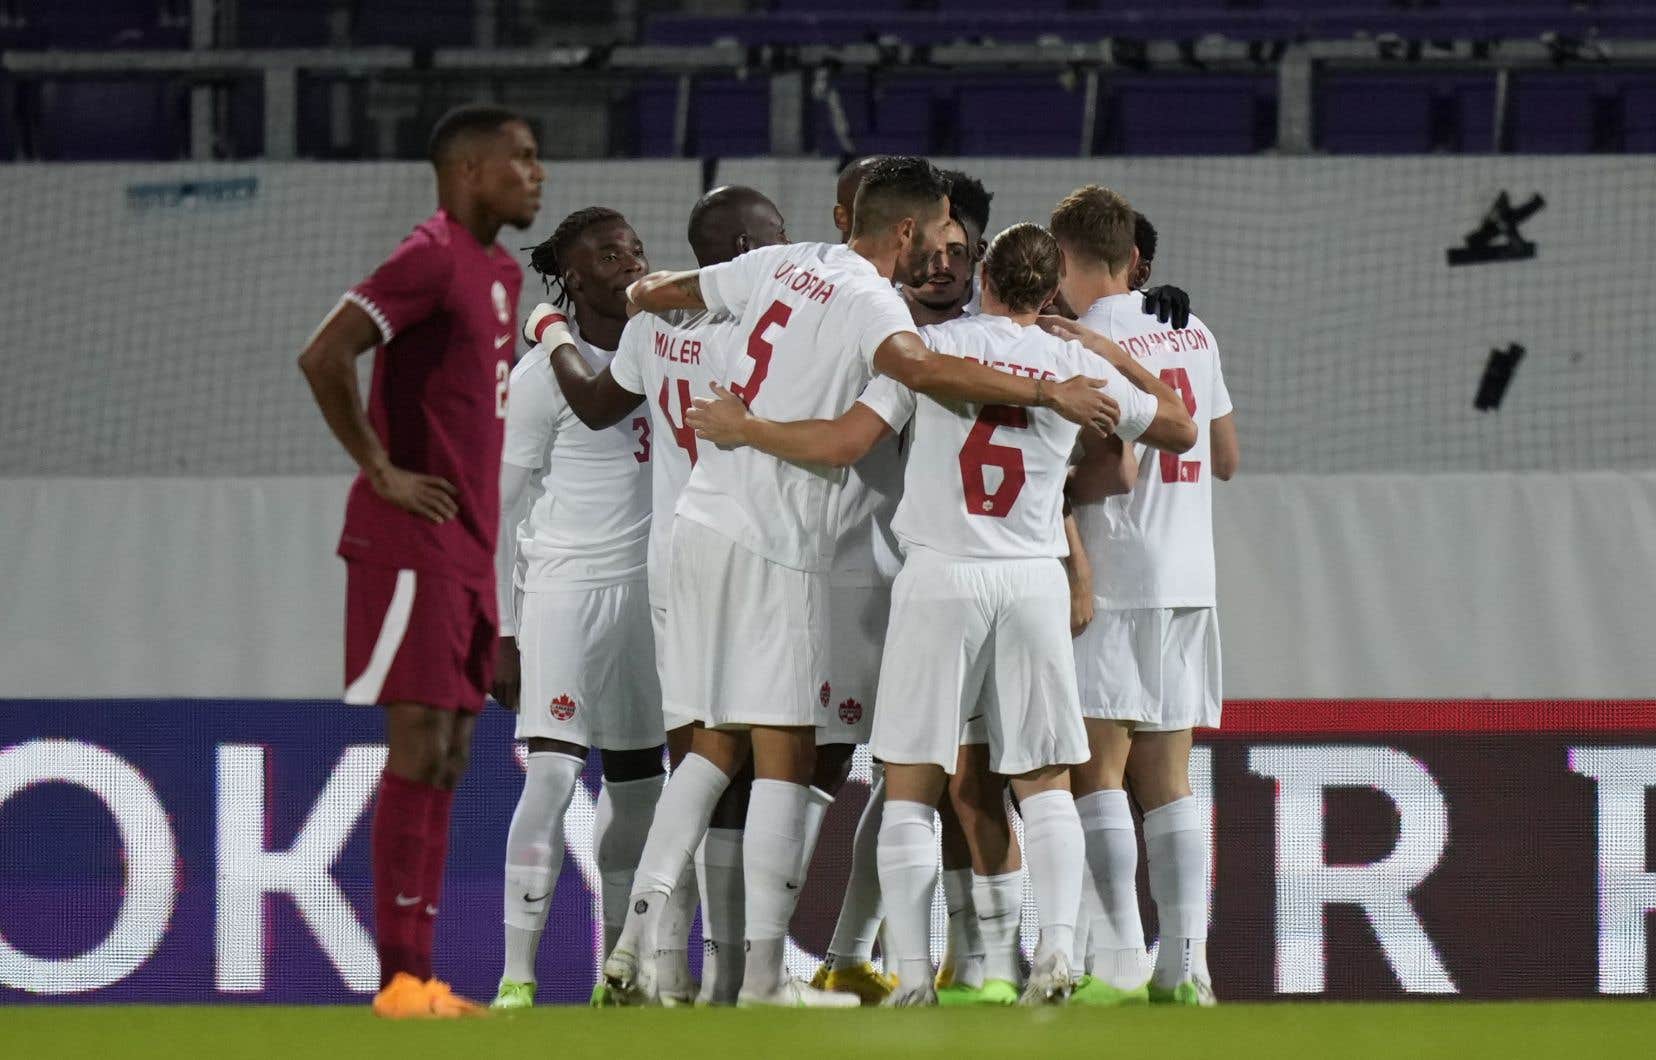 Canada beat Qatar 2-0 in a friendly match

